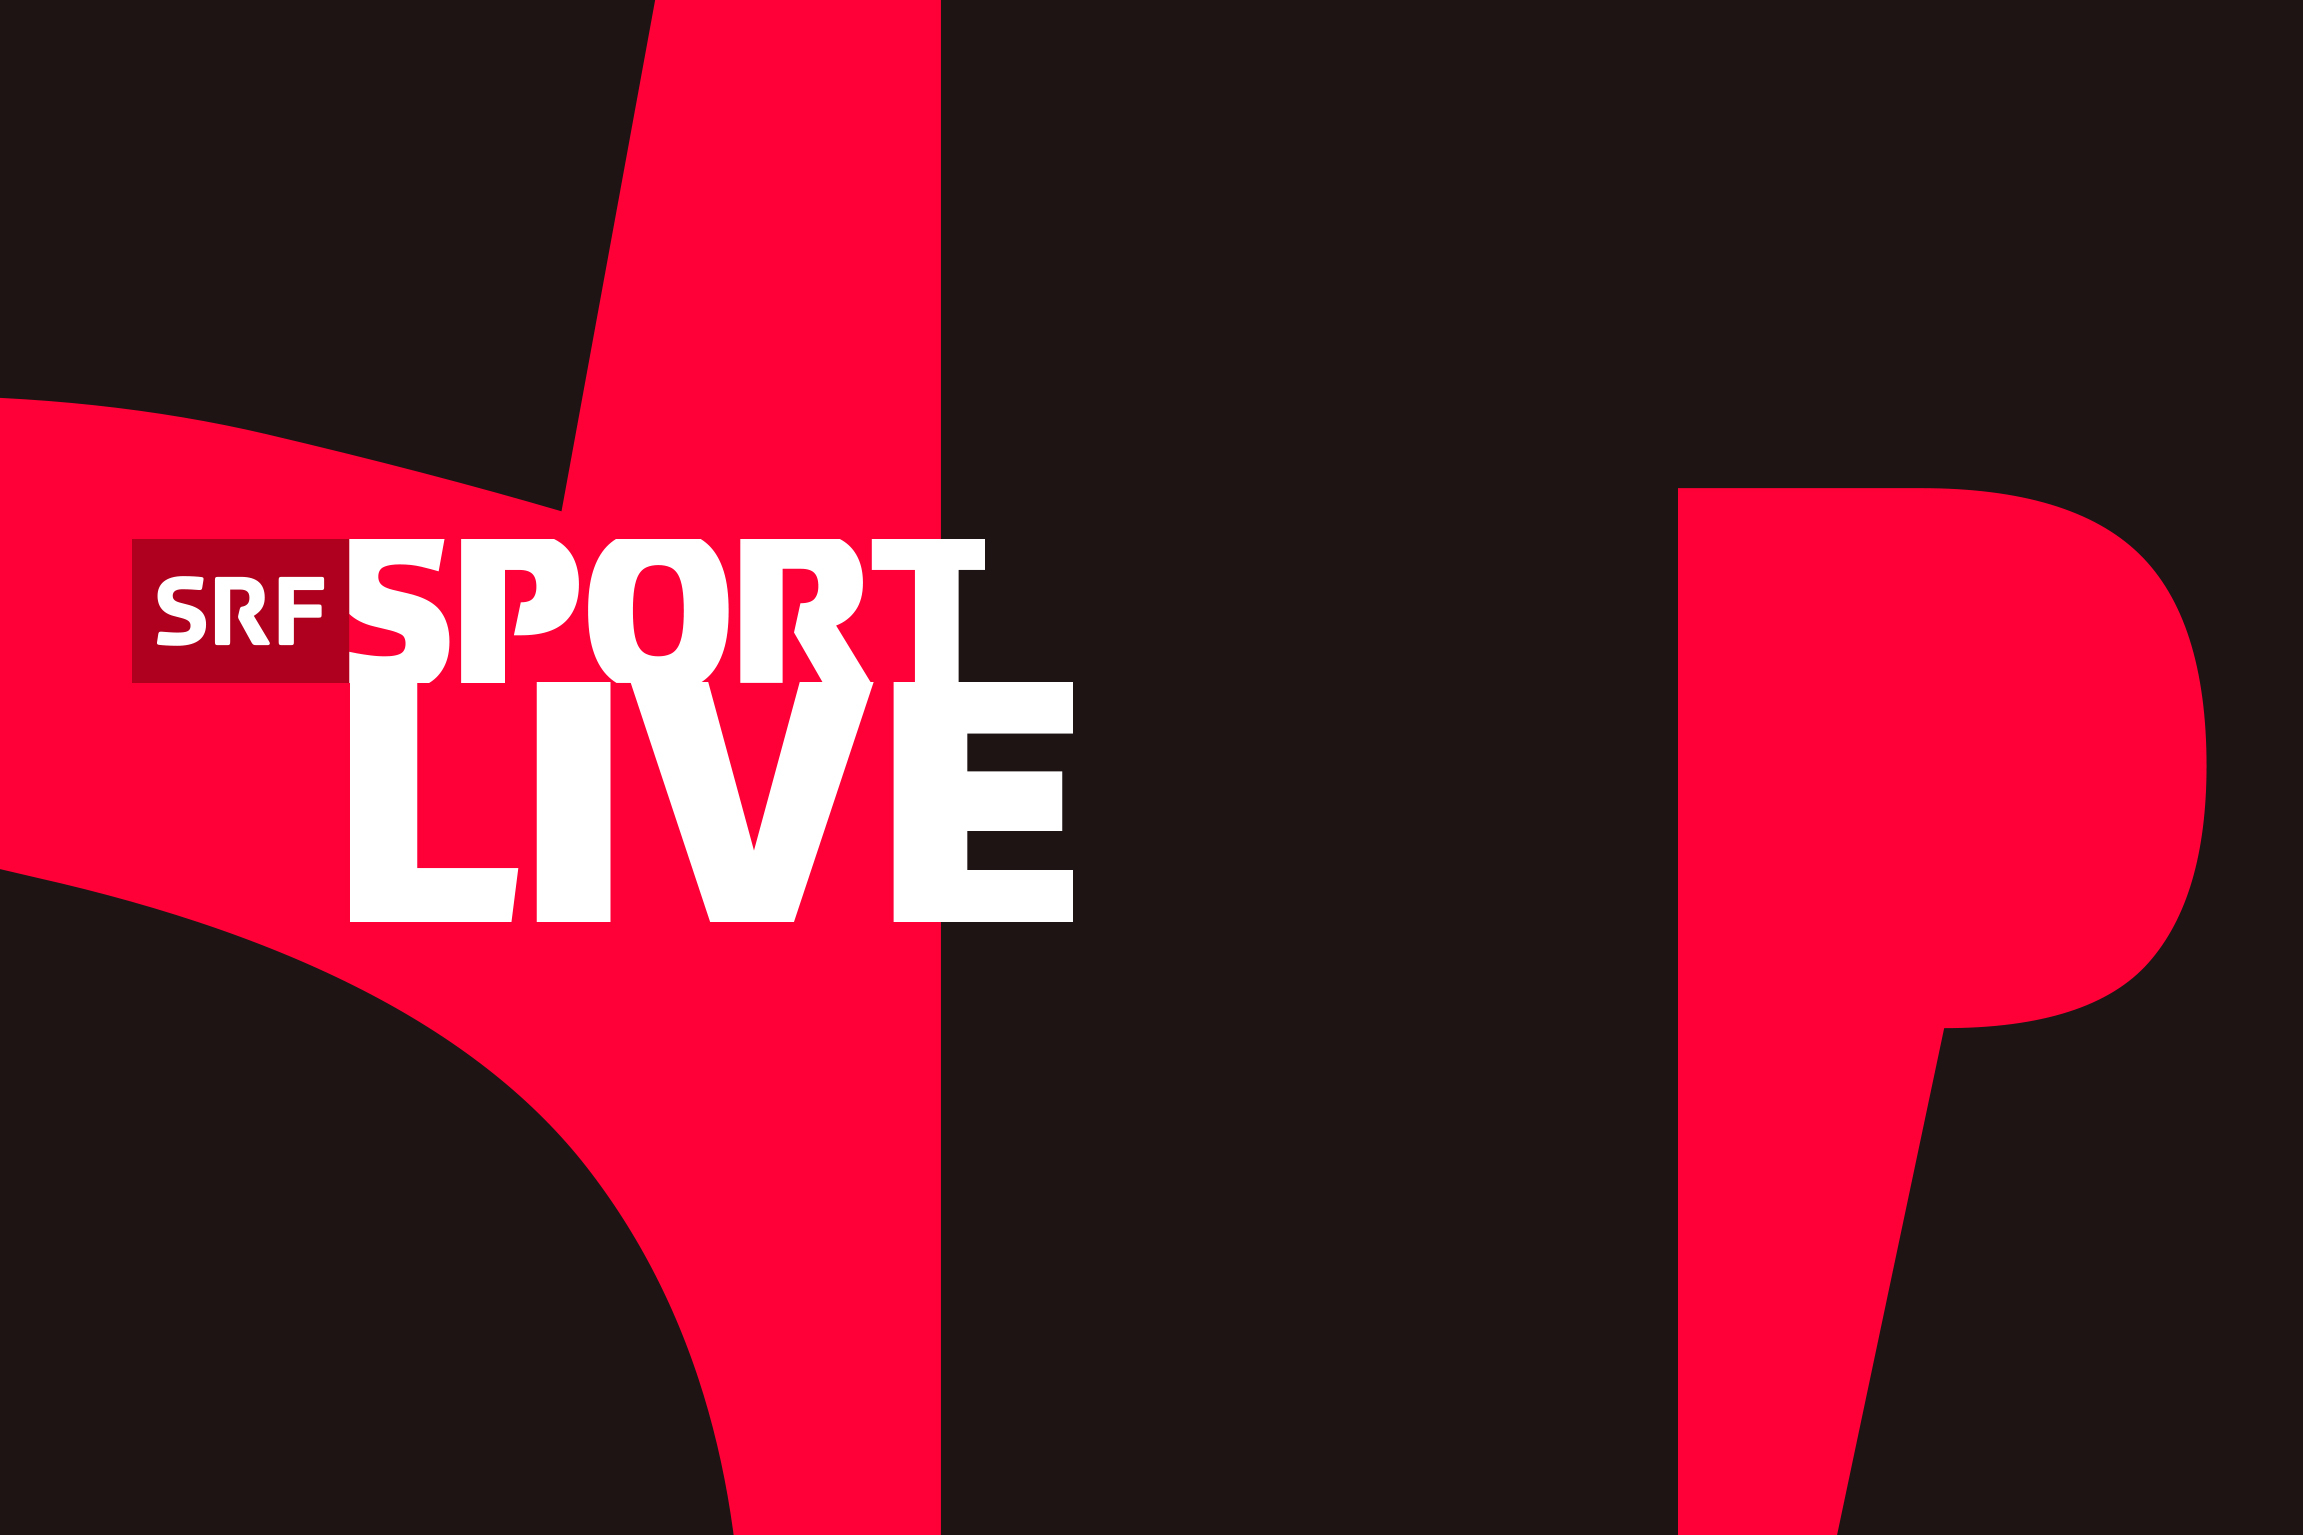 SRF sendet 28 Stunden live von der Kletter-WM in Bern - Medienportal